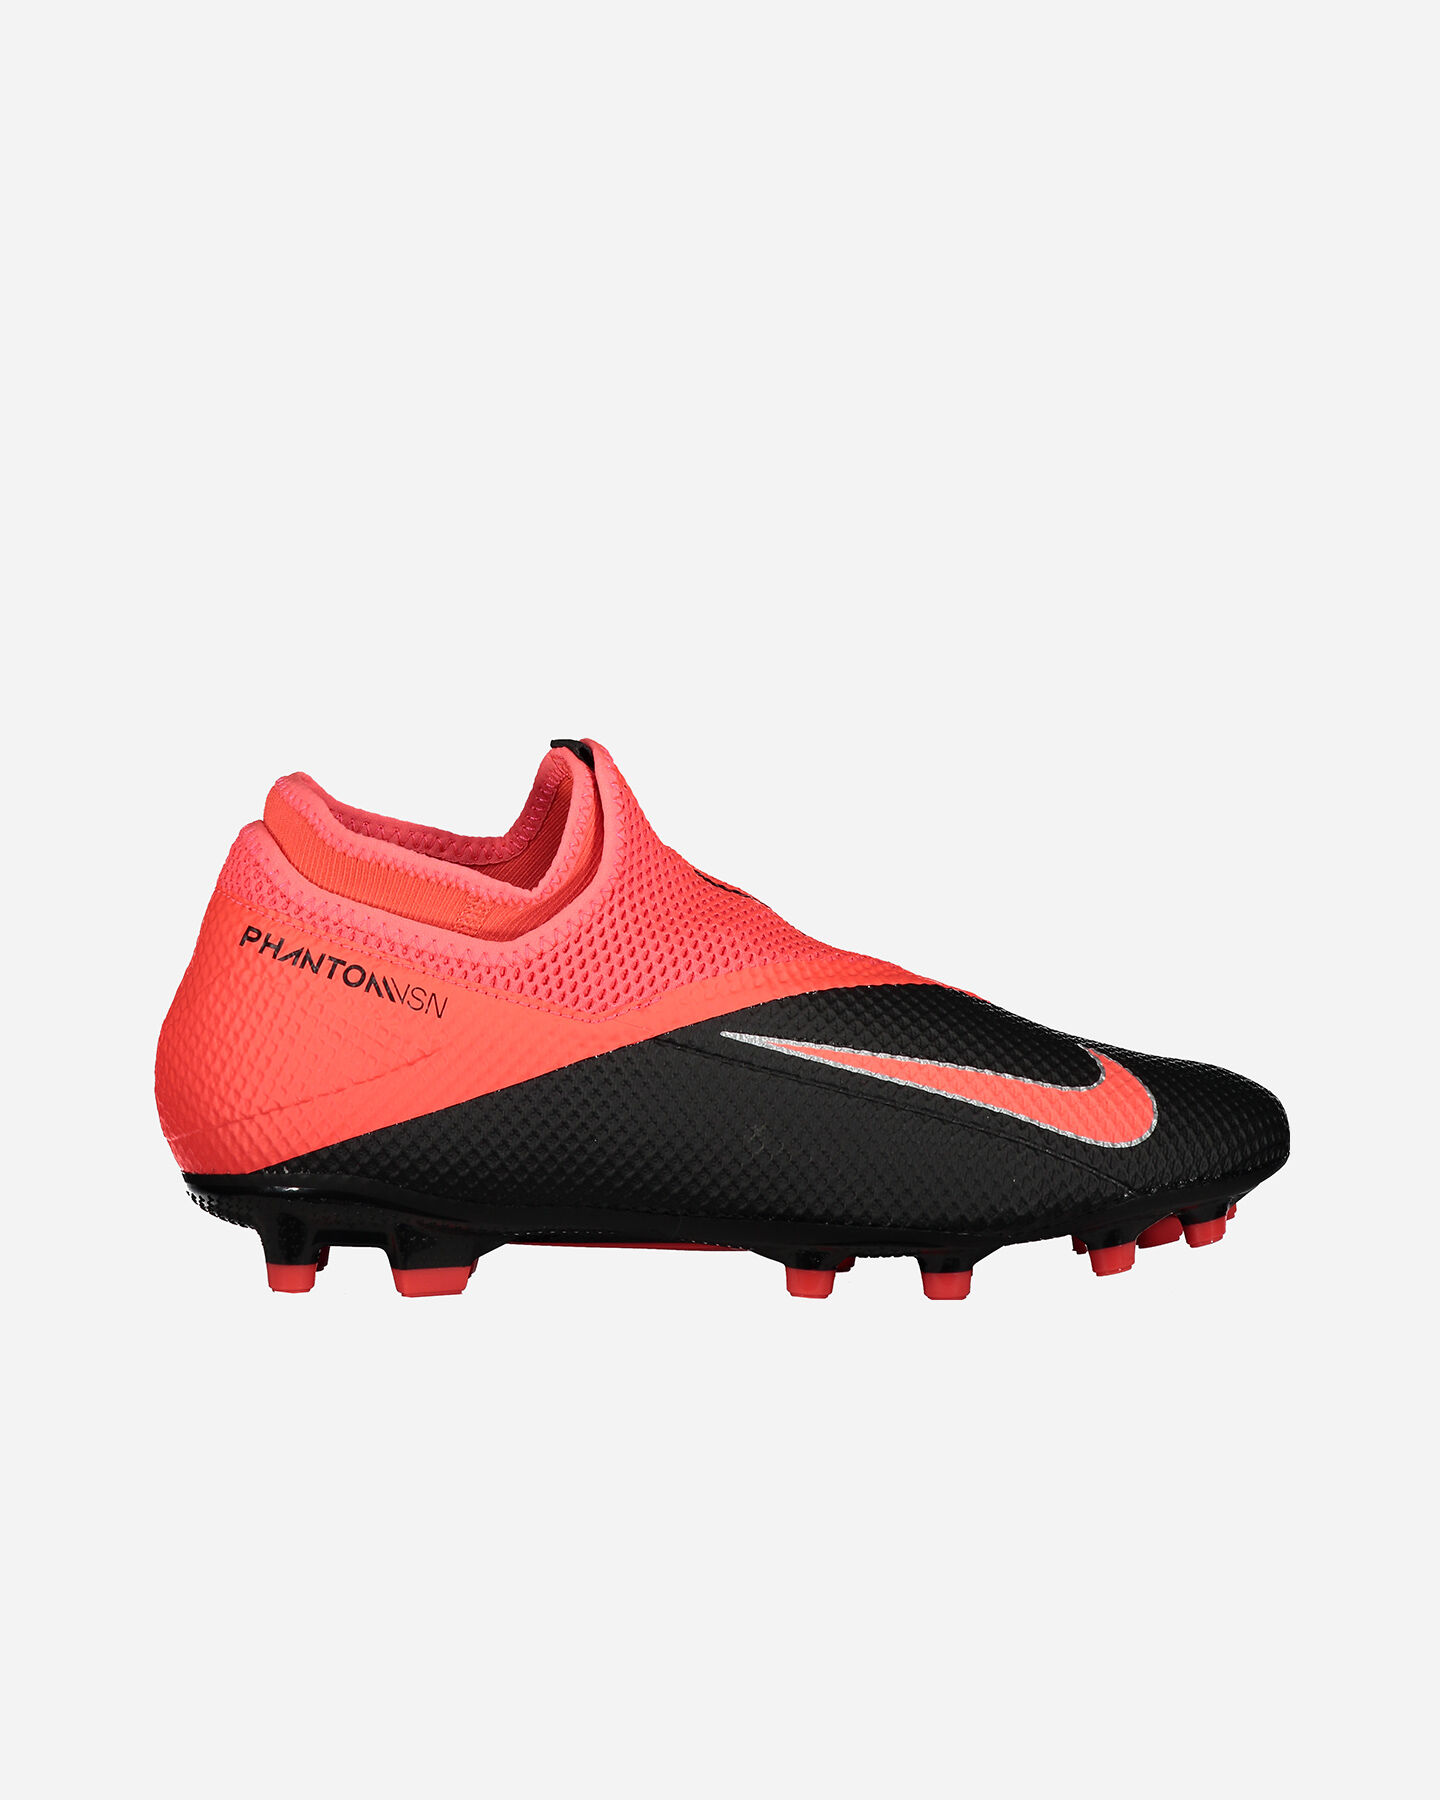 Collezione Nike Phantom: scarpe da calcio uomo e donna | Cisalfa Sport